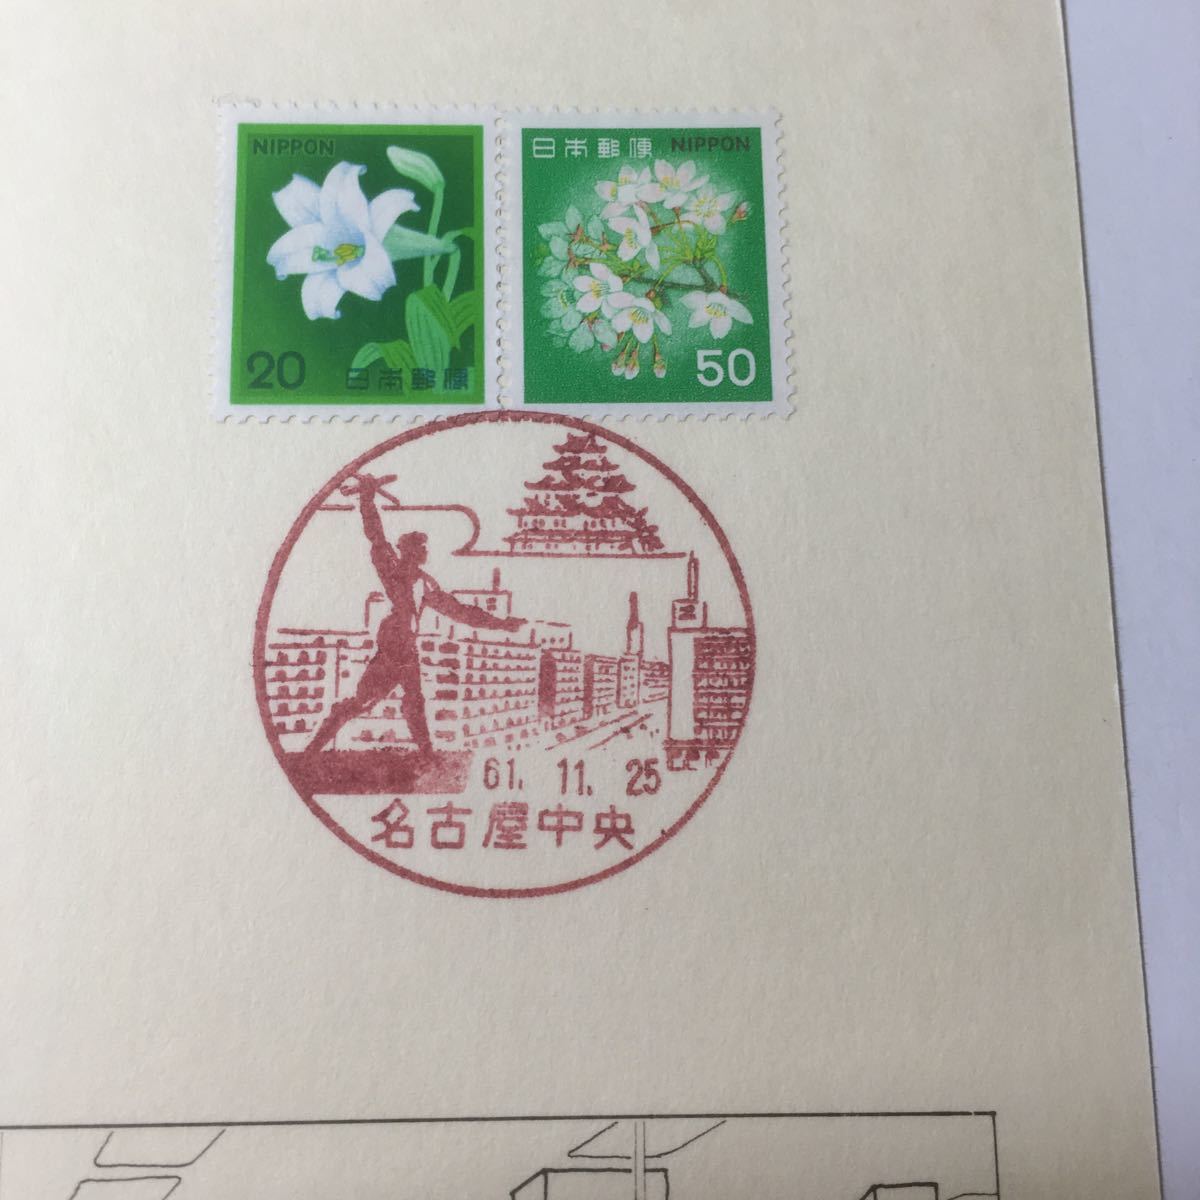 日本郵便 名古屋中央郵便局改装記念 昭和61年 11月25日 印押し_画像6